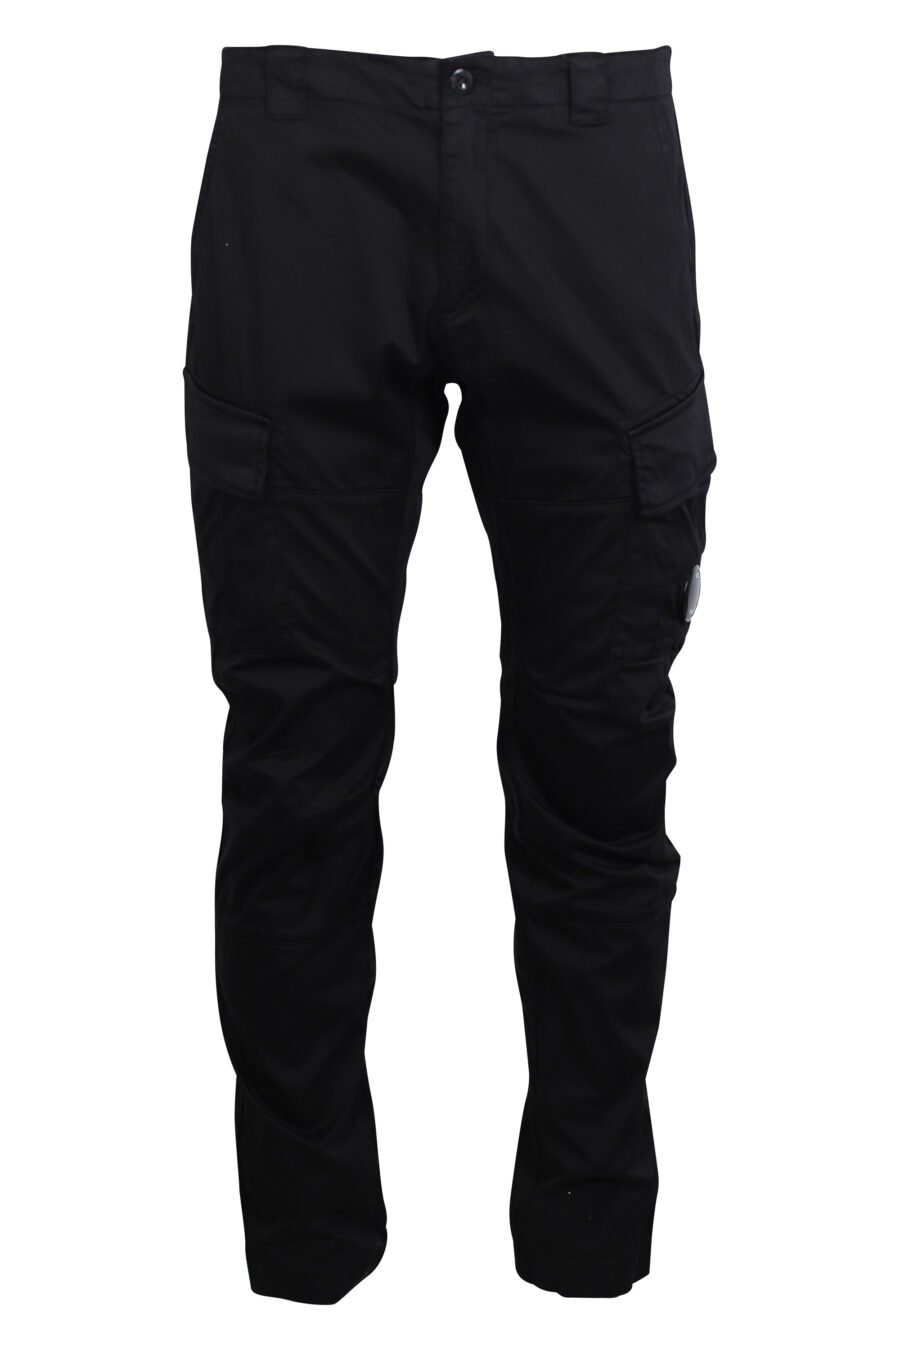 Pantalon cargo noir avec mini-logo circulaire - IMG 2464